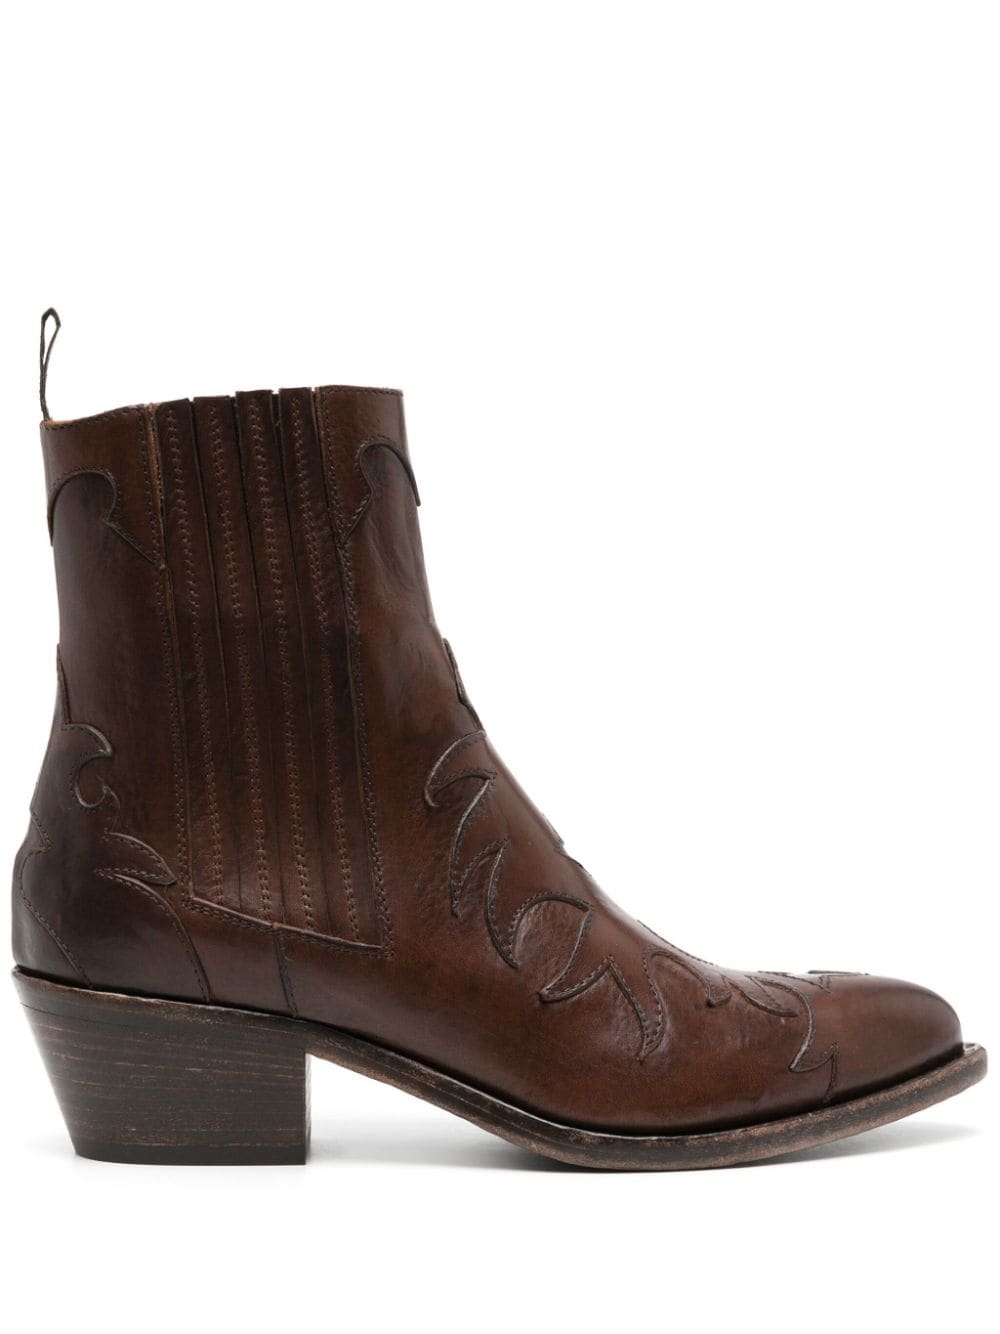 Sartore 45mm panelled leather boots - Brown von Sartore